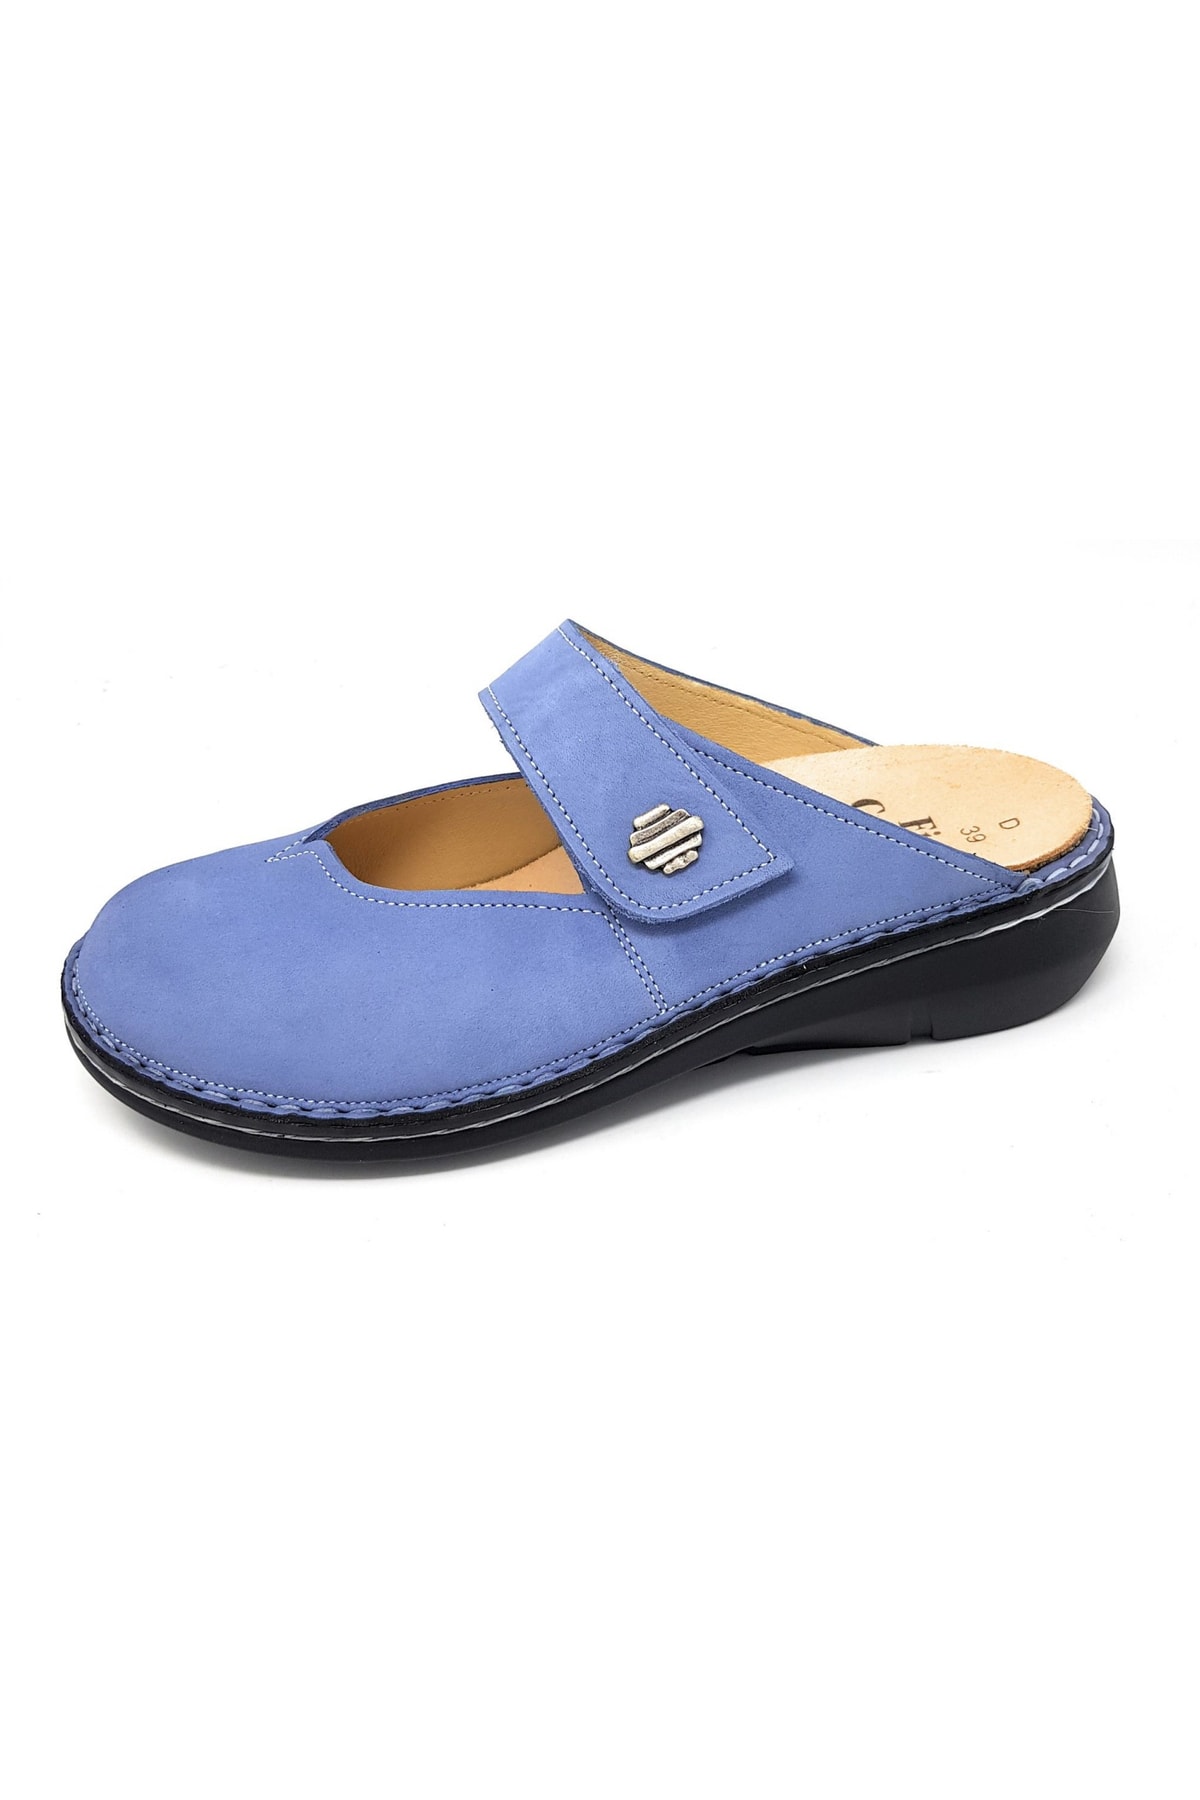 Finn Comfort Sandalette Blau Flacher Absatz Fast ausverkauft